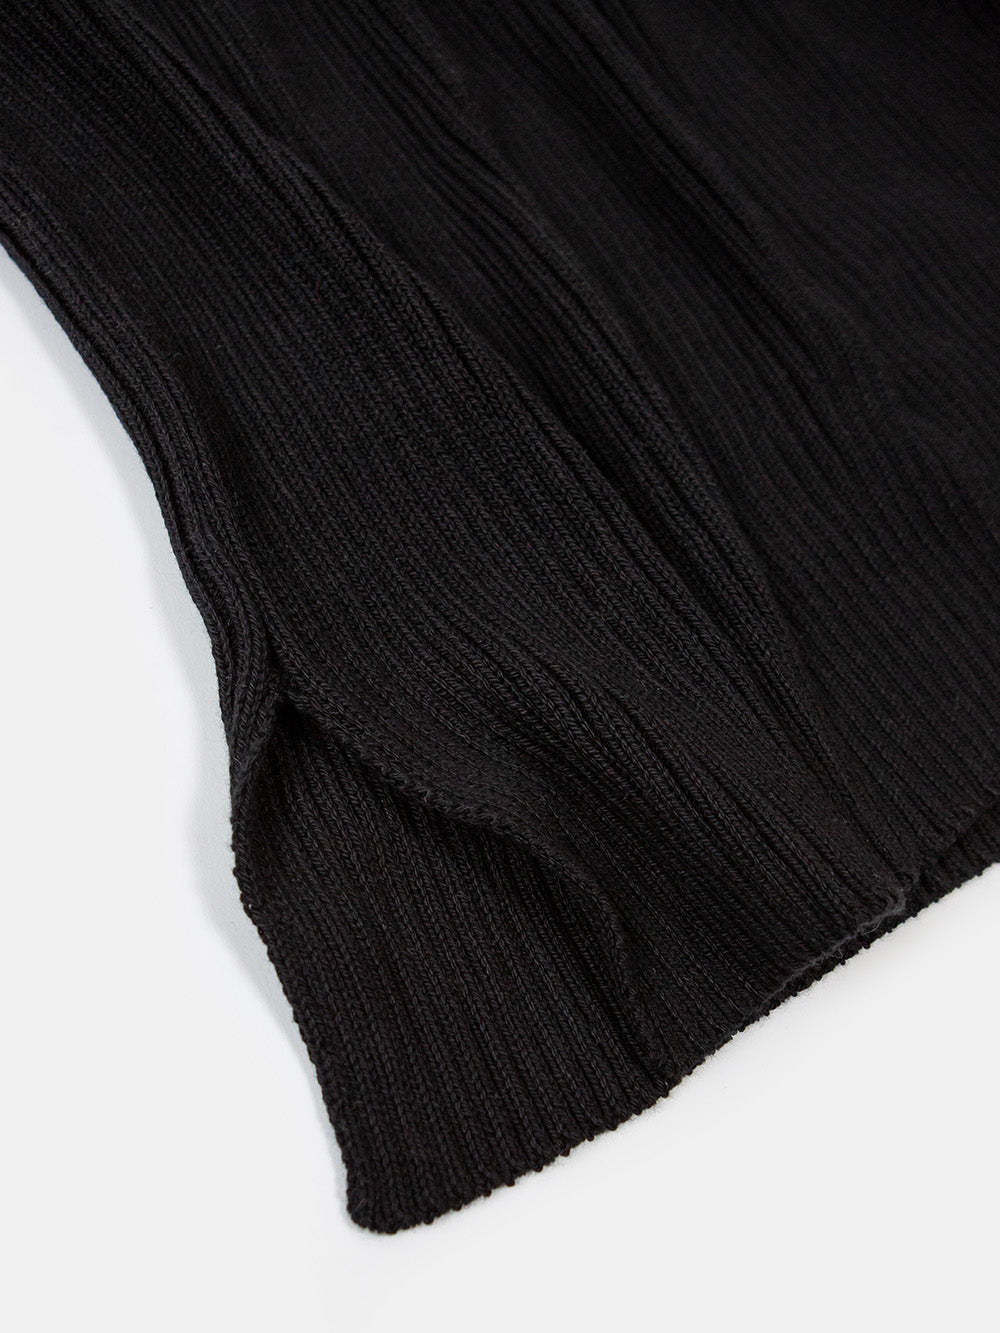 Pima Cotton Ribbed Pullover in Black